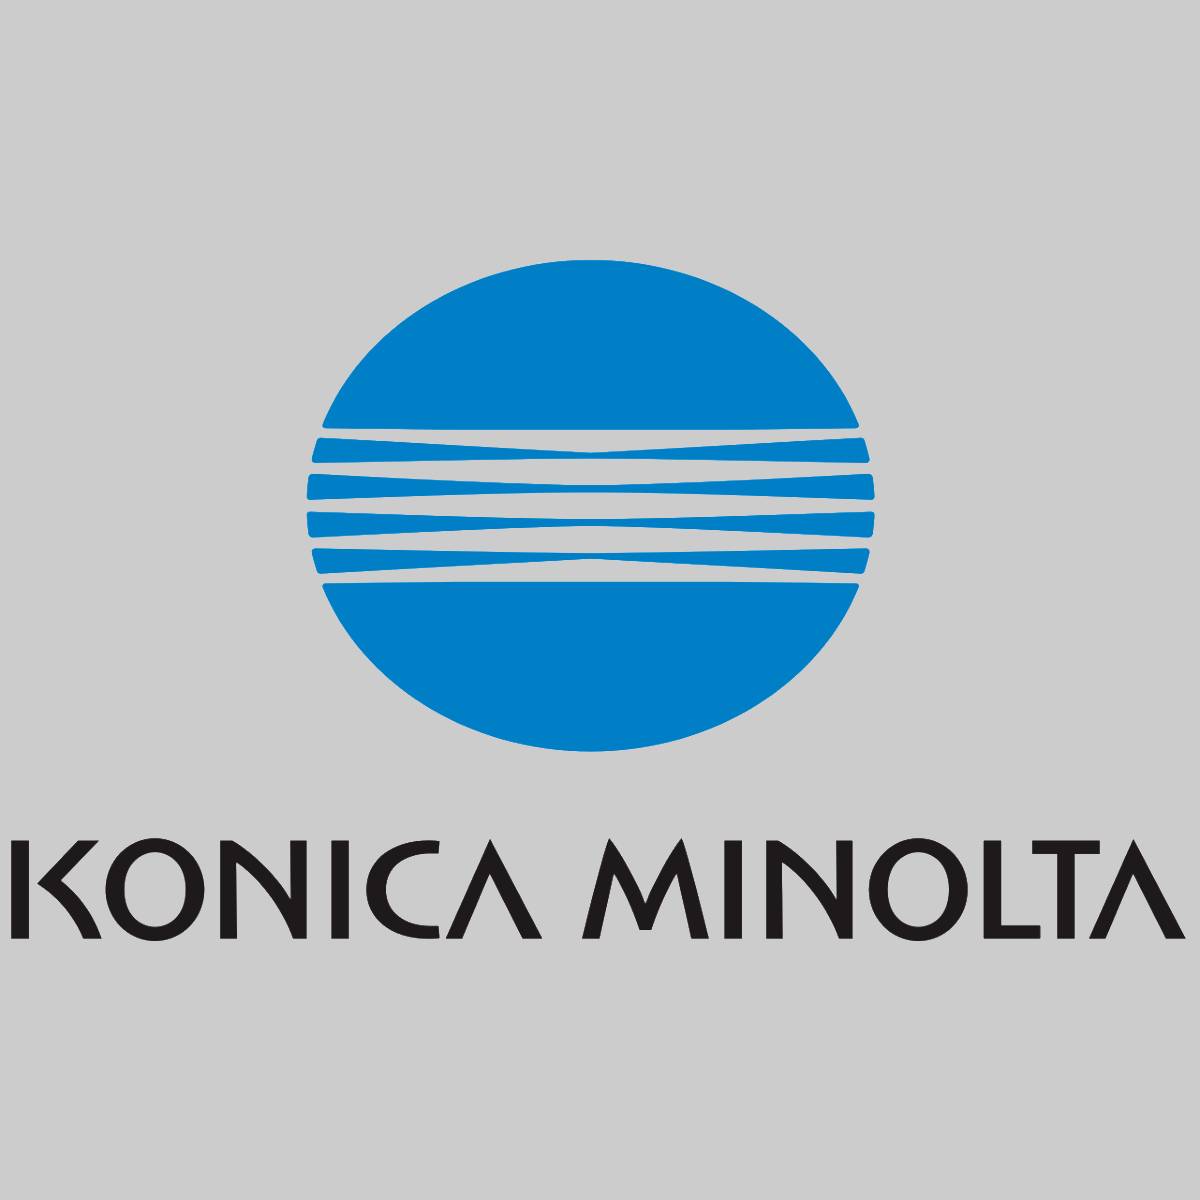 "Toner d'origine Konica Minolta Magenta A0V30AH Magicolor 1600 NEU OVP